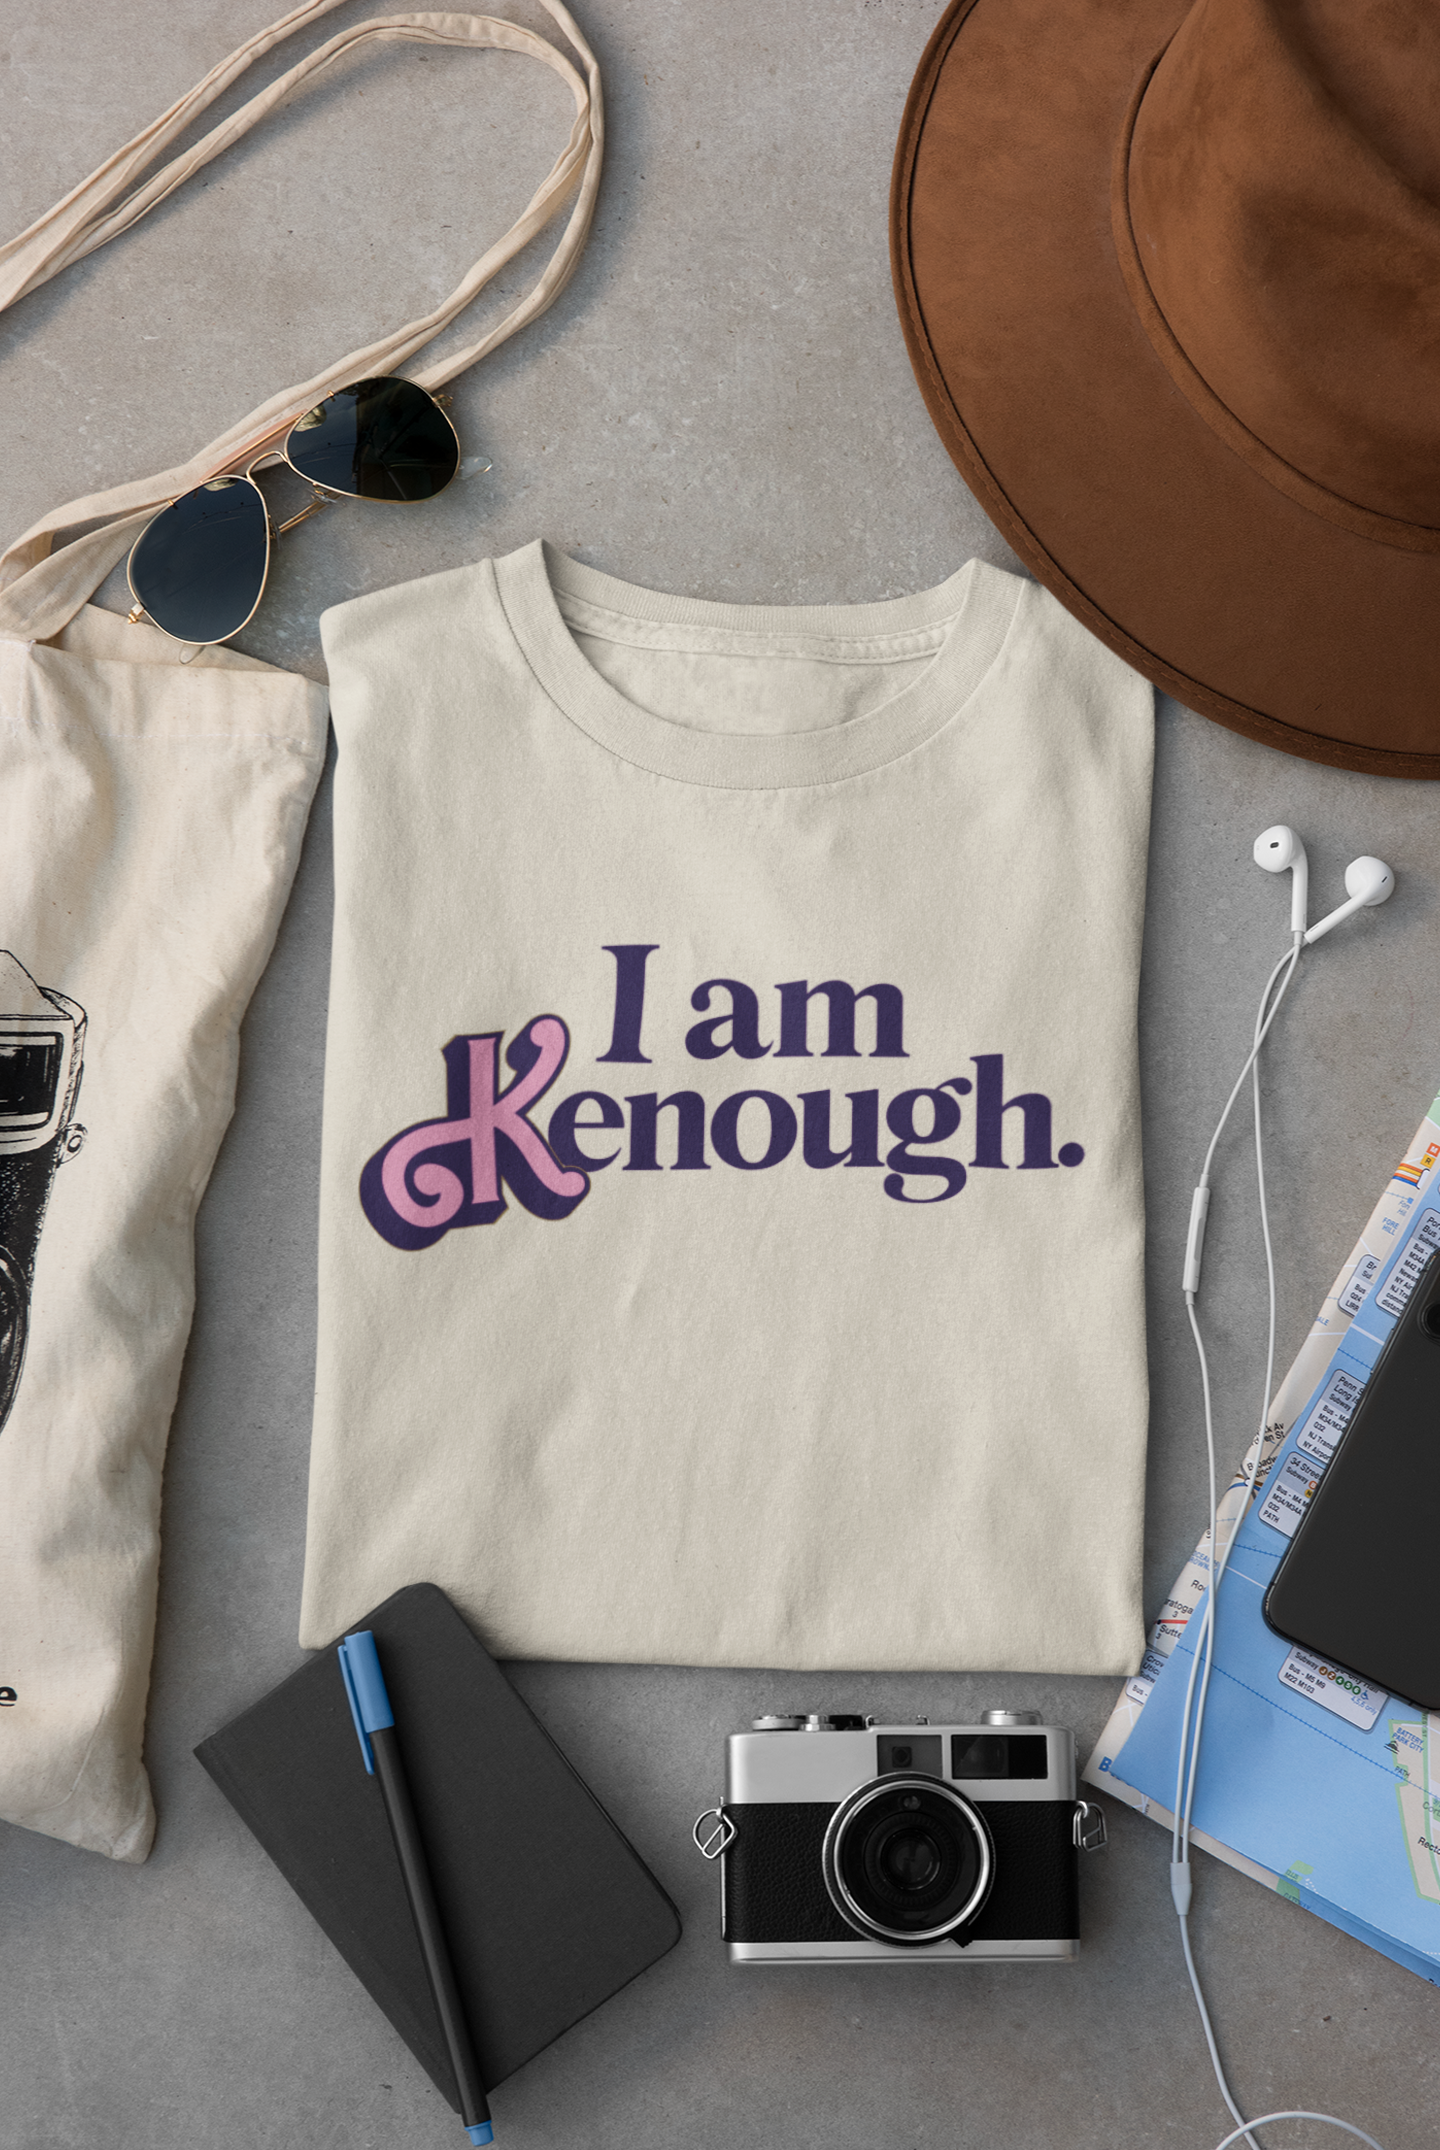 I am K enough